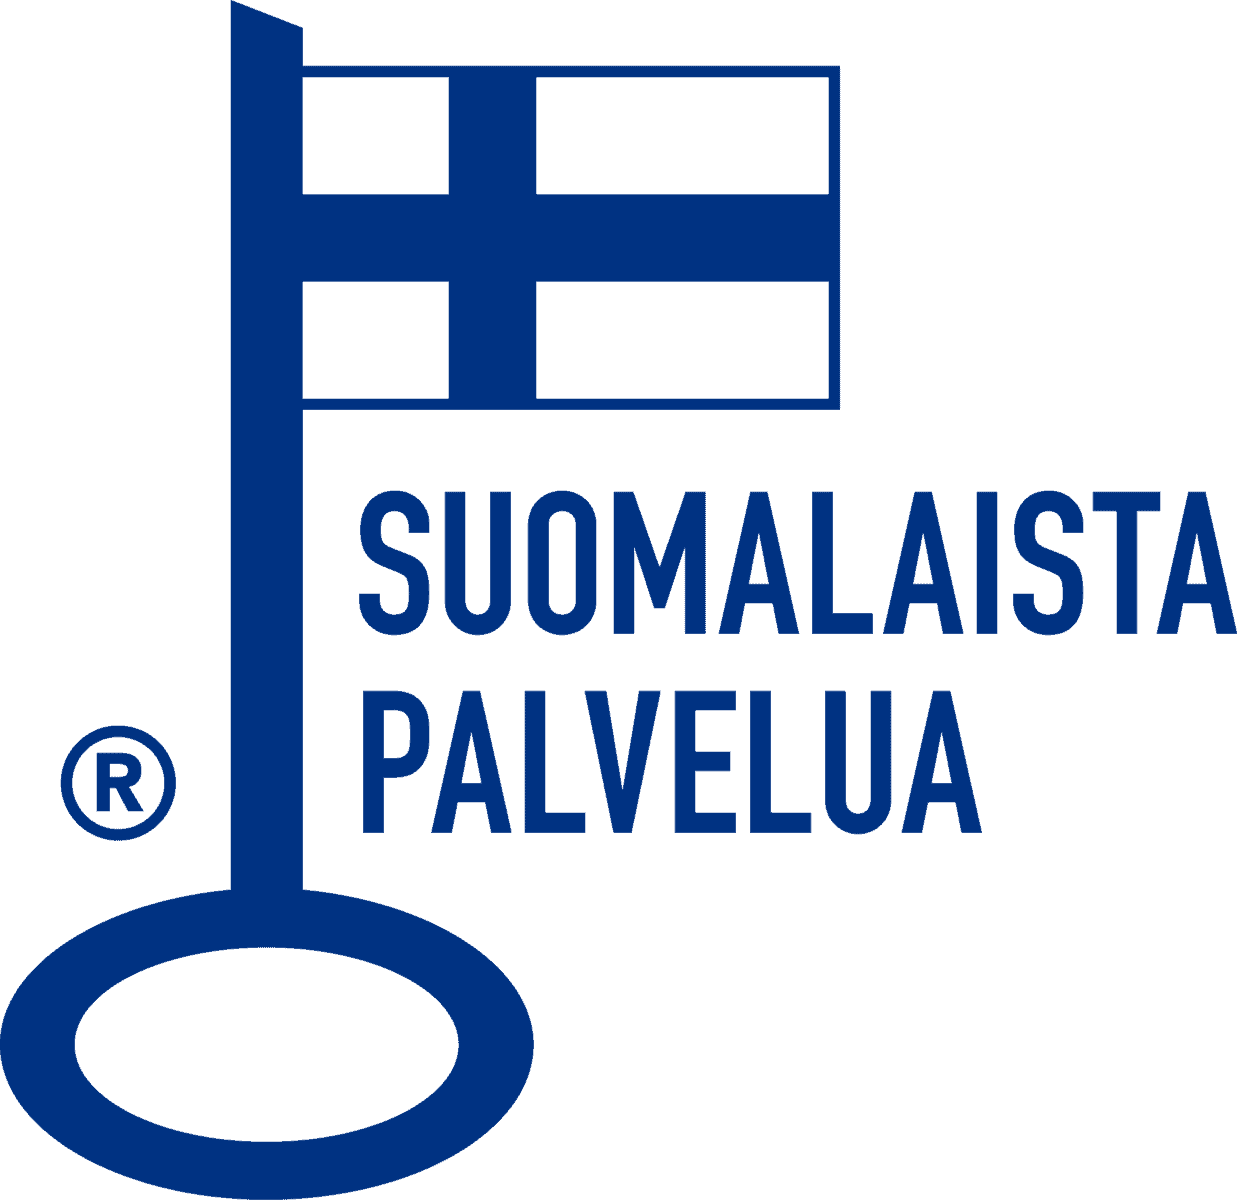 Finnish service ID